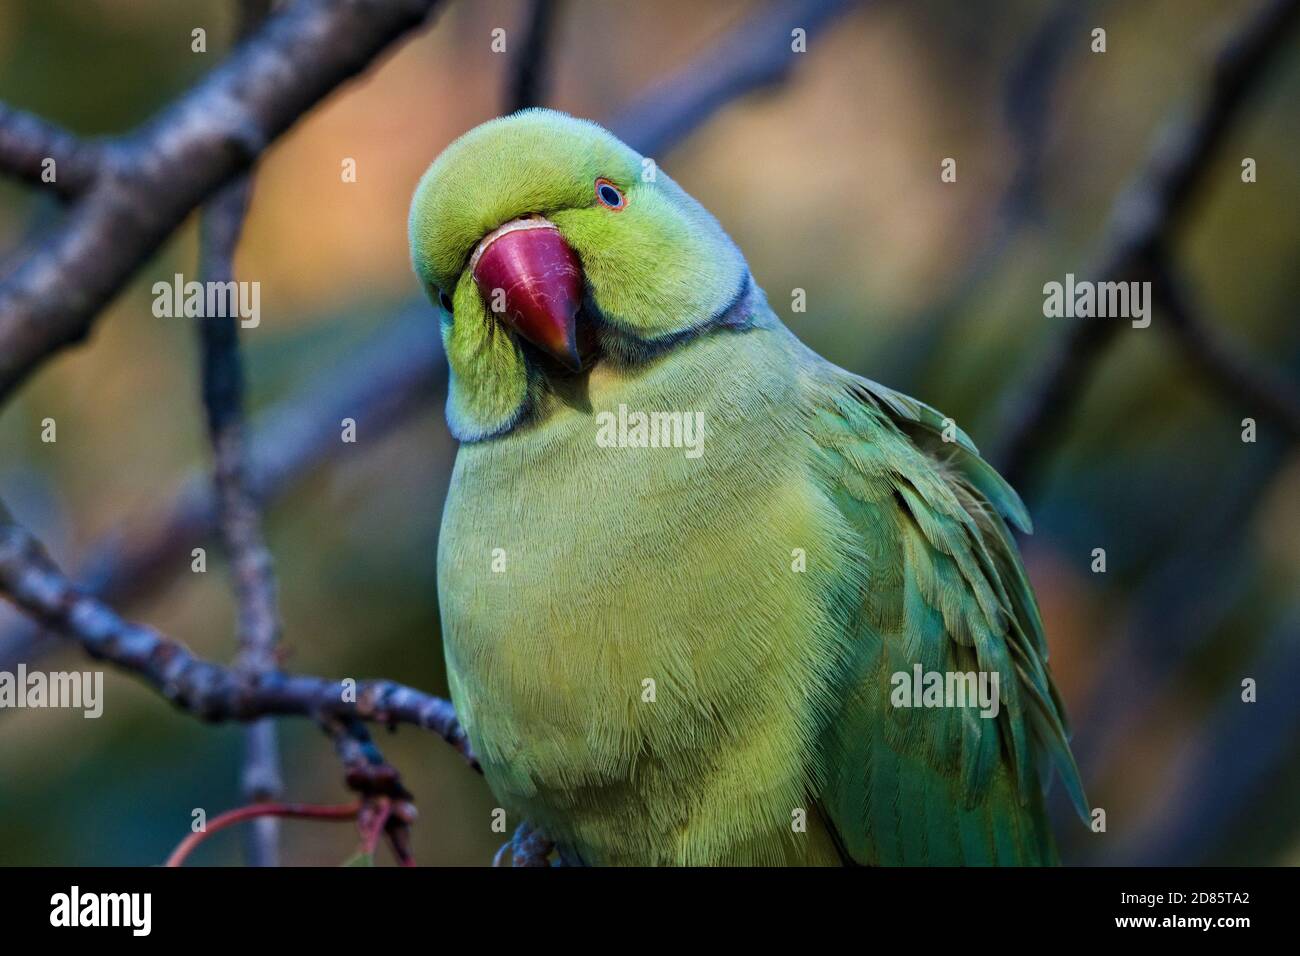 Green rose ringed parakeet, Psittacula krameri, sulle cime degli alberi guardando giù la fotocamera con curiosità Foto Stock